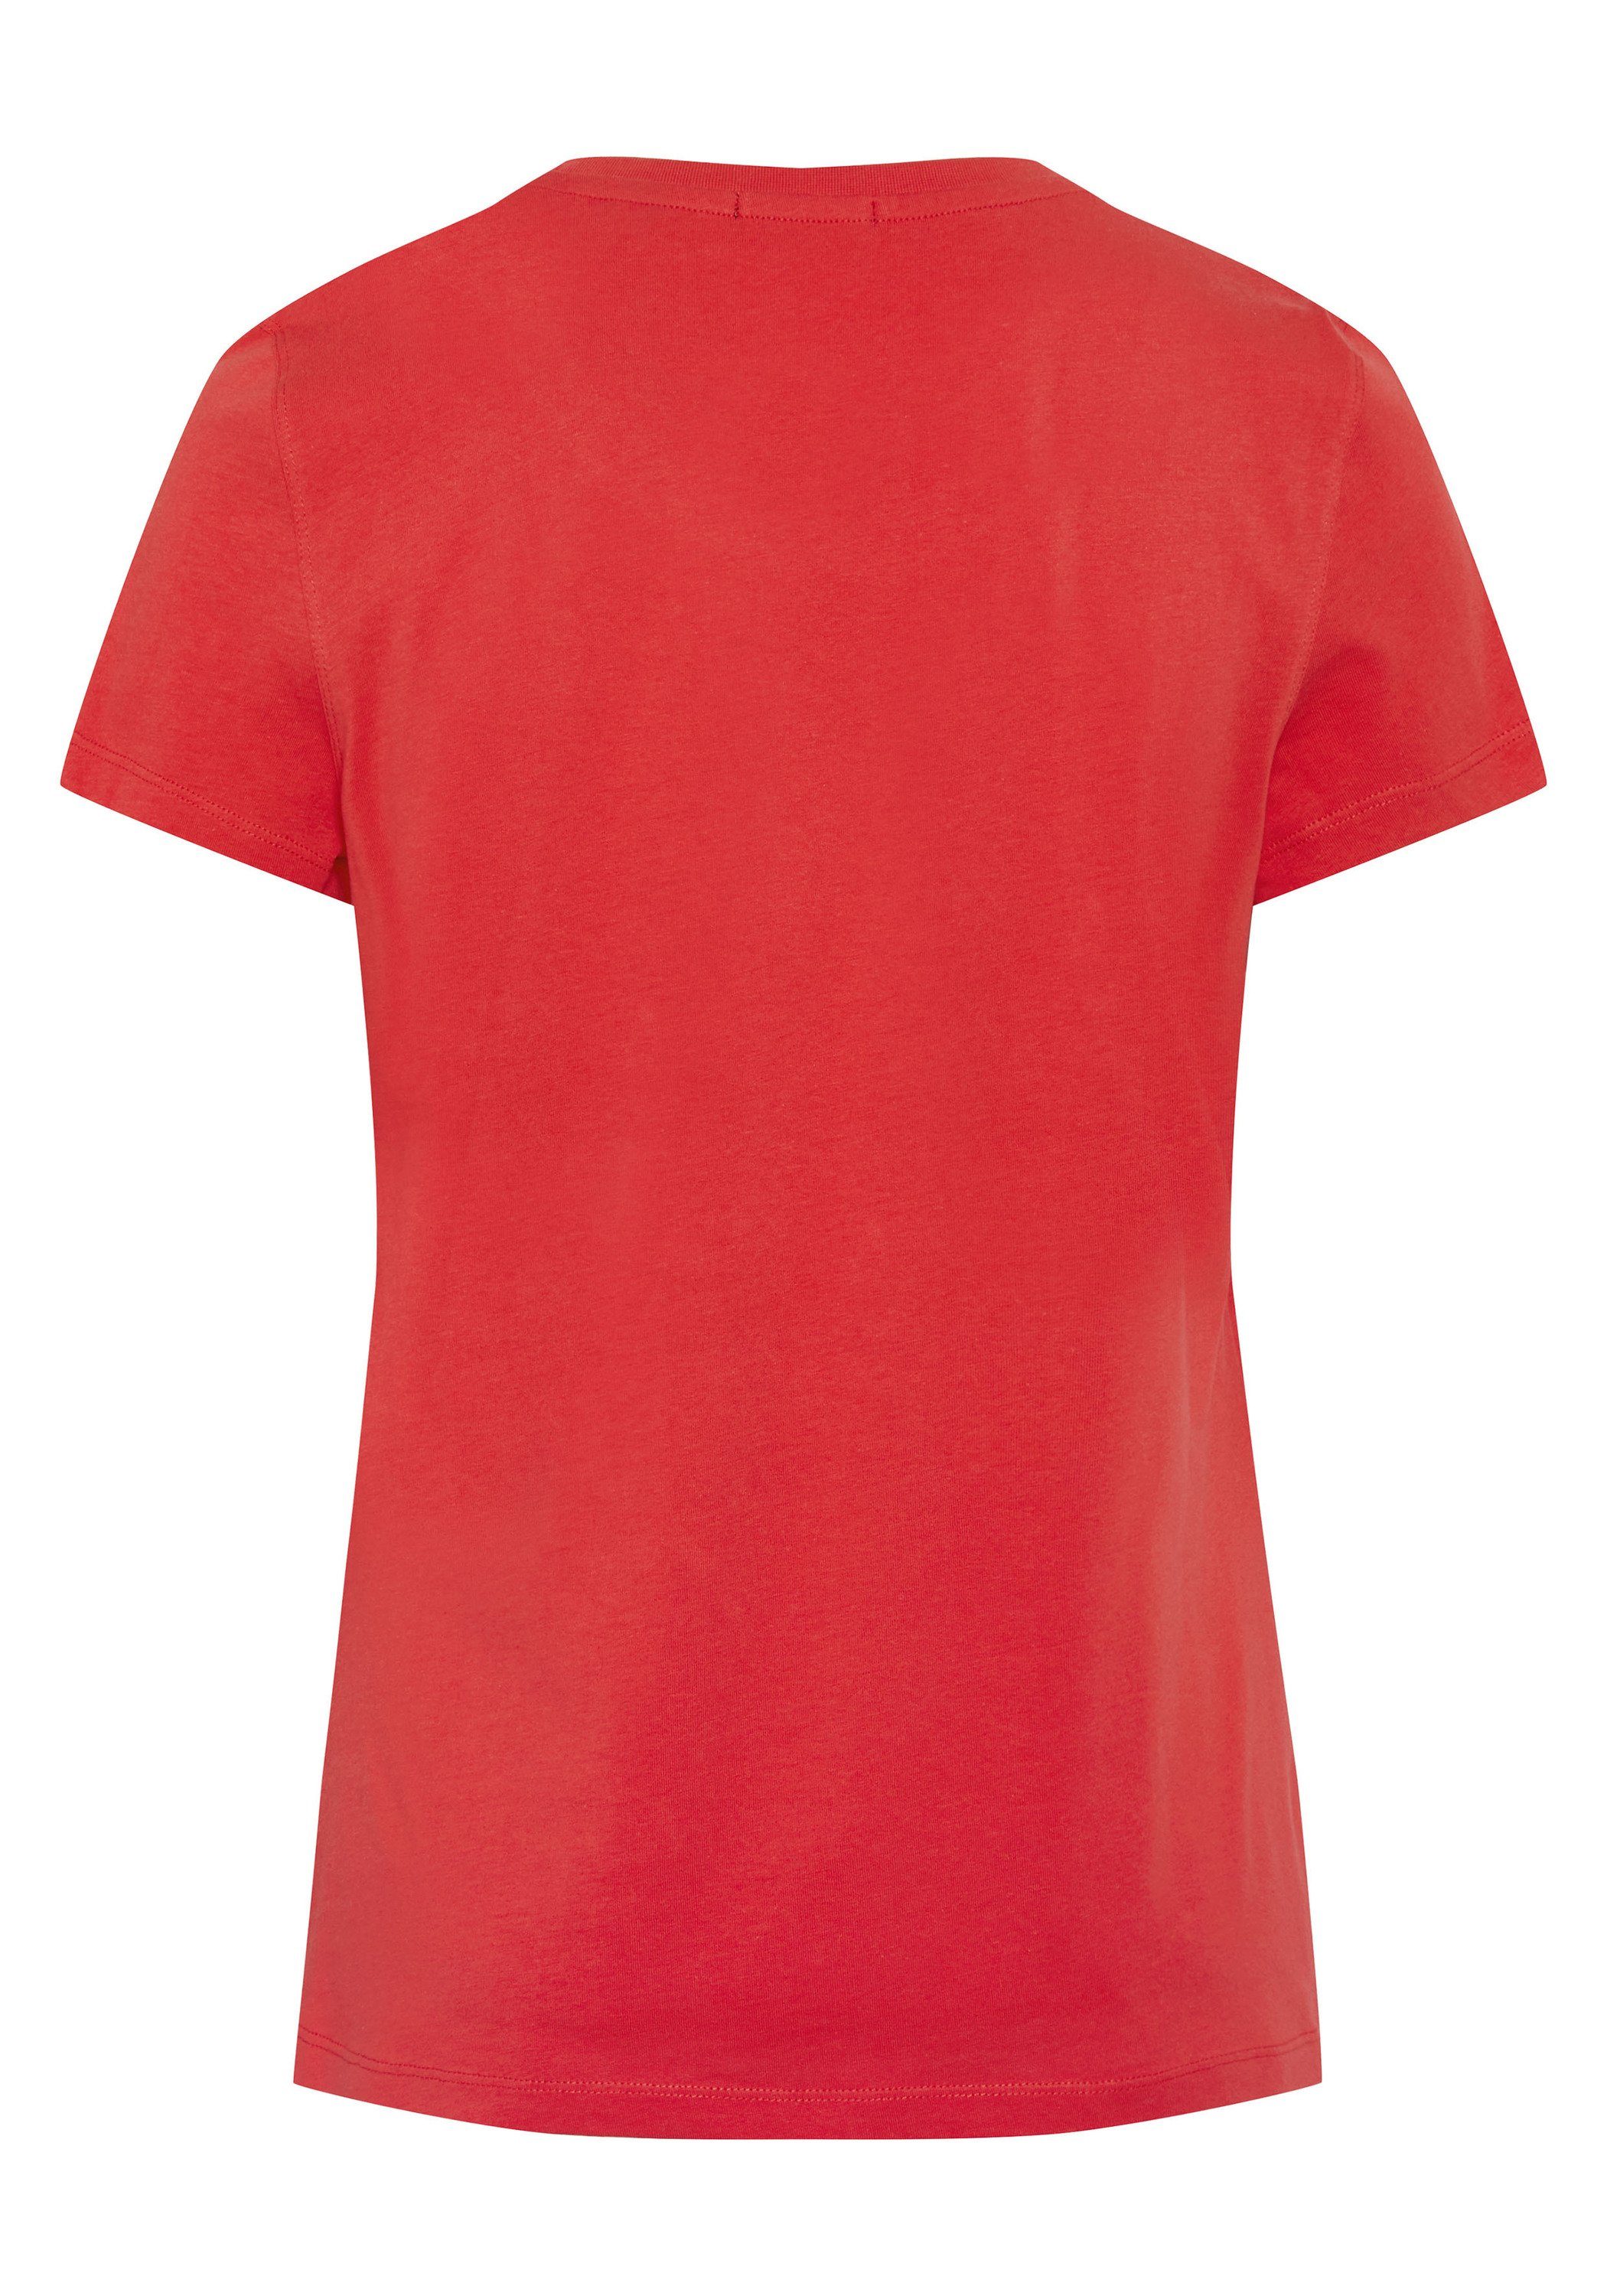 Chiemsee Print-Shirt T-Shirt 17-1663 mit Multicolour-Logo Bittersweet 1 flauschigem